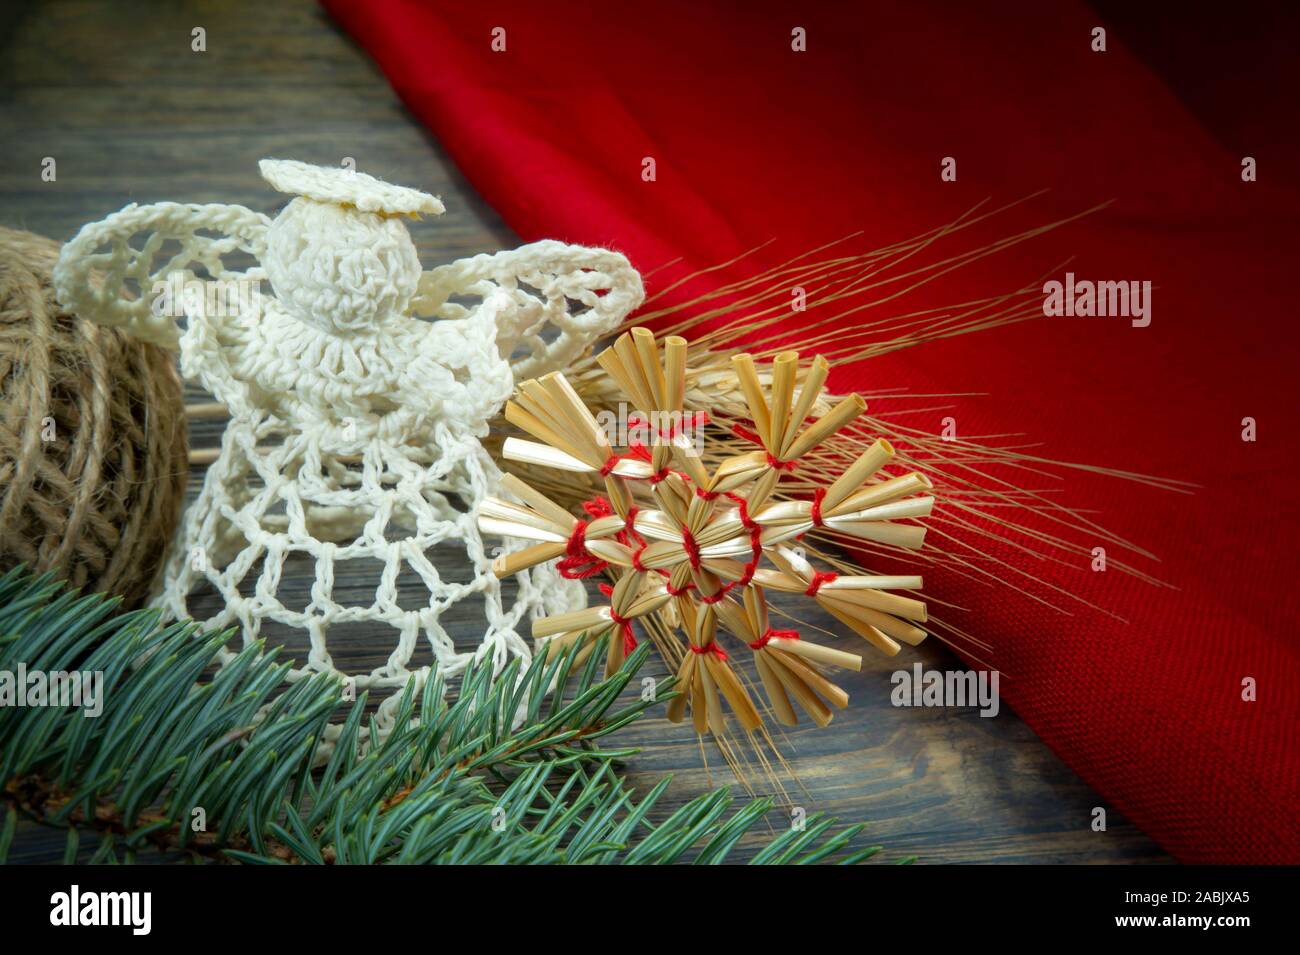 Fond de Noël avec des ornements faits à la main, y compris un ange de bonneterie thread et une paille star attaché avec de la ficelle rouge sur un bois rustique background Banque D'Images